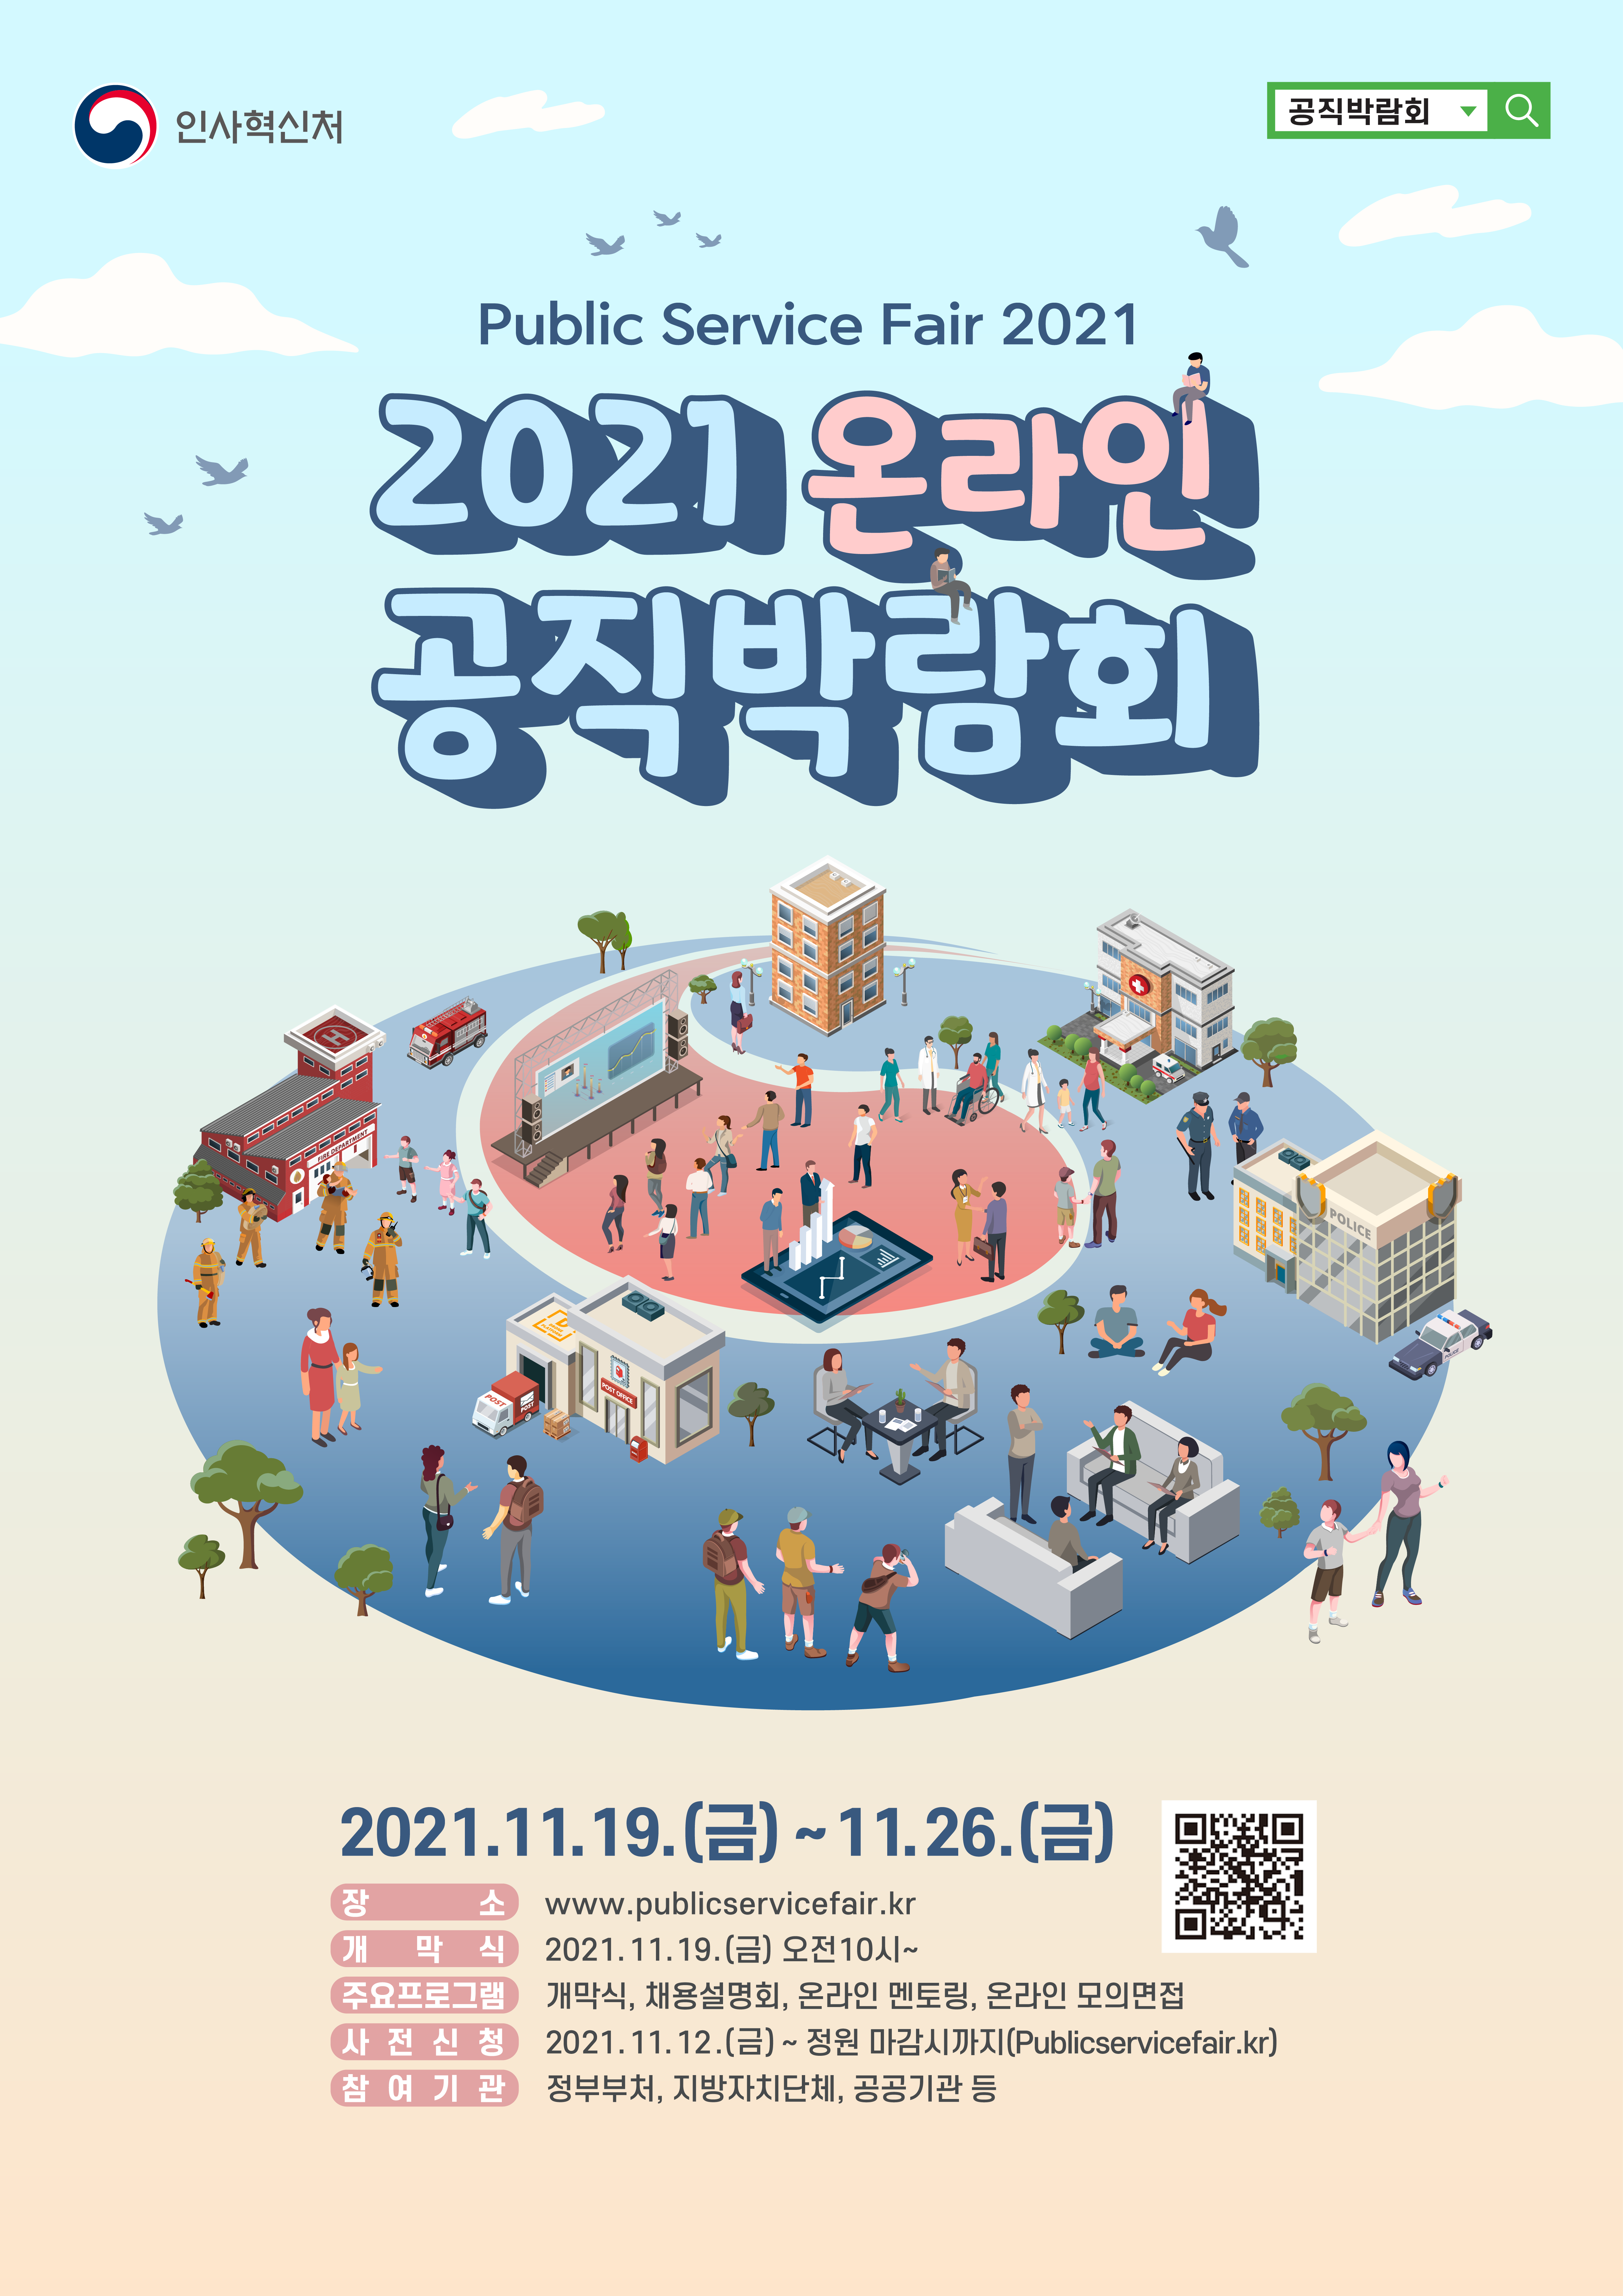 [공직박람회] 2021 하반기 온라인 공직박람회 개최 안내 (2021.11.19 ~ 26)